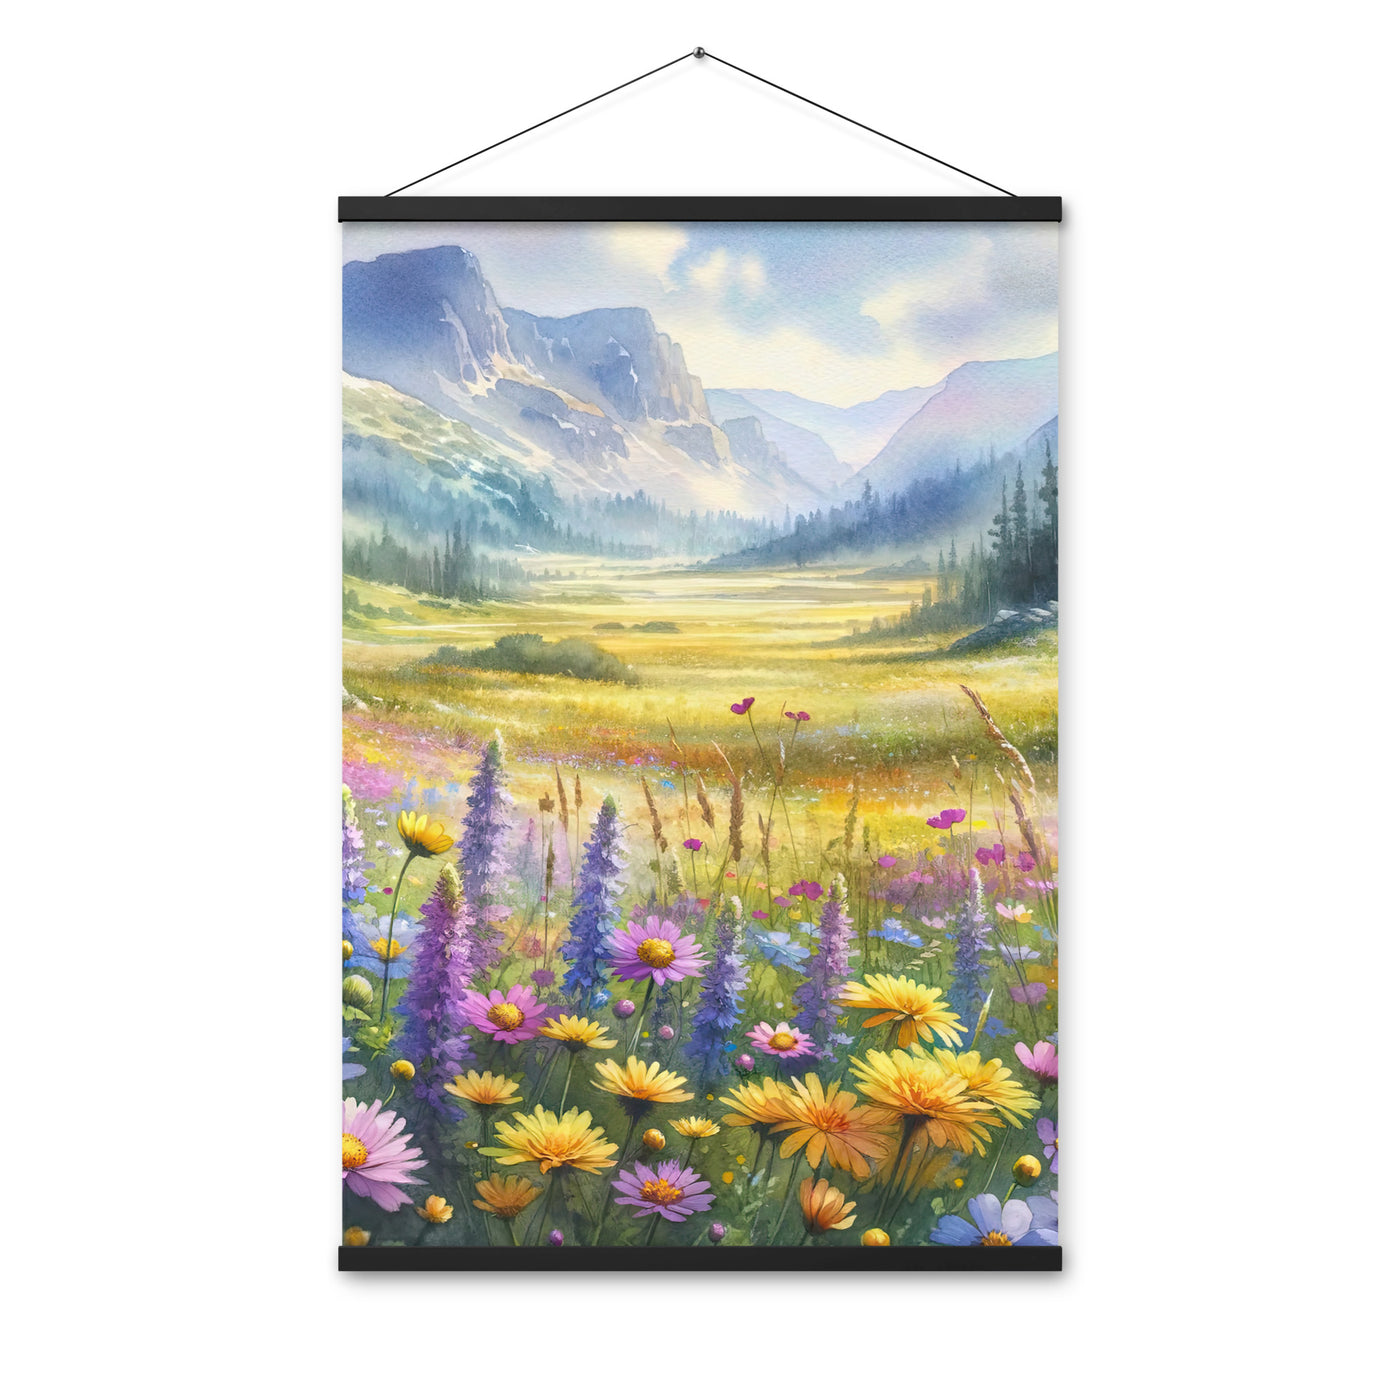 Aquarell einer Almwiese in Ruhe, Wildblumenteppich in Gelb, Lila, Rosa - Premium Poster mit Aufhängung berge xxx yyy zzz 61 x 91.4 cm